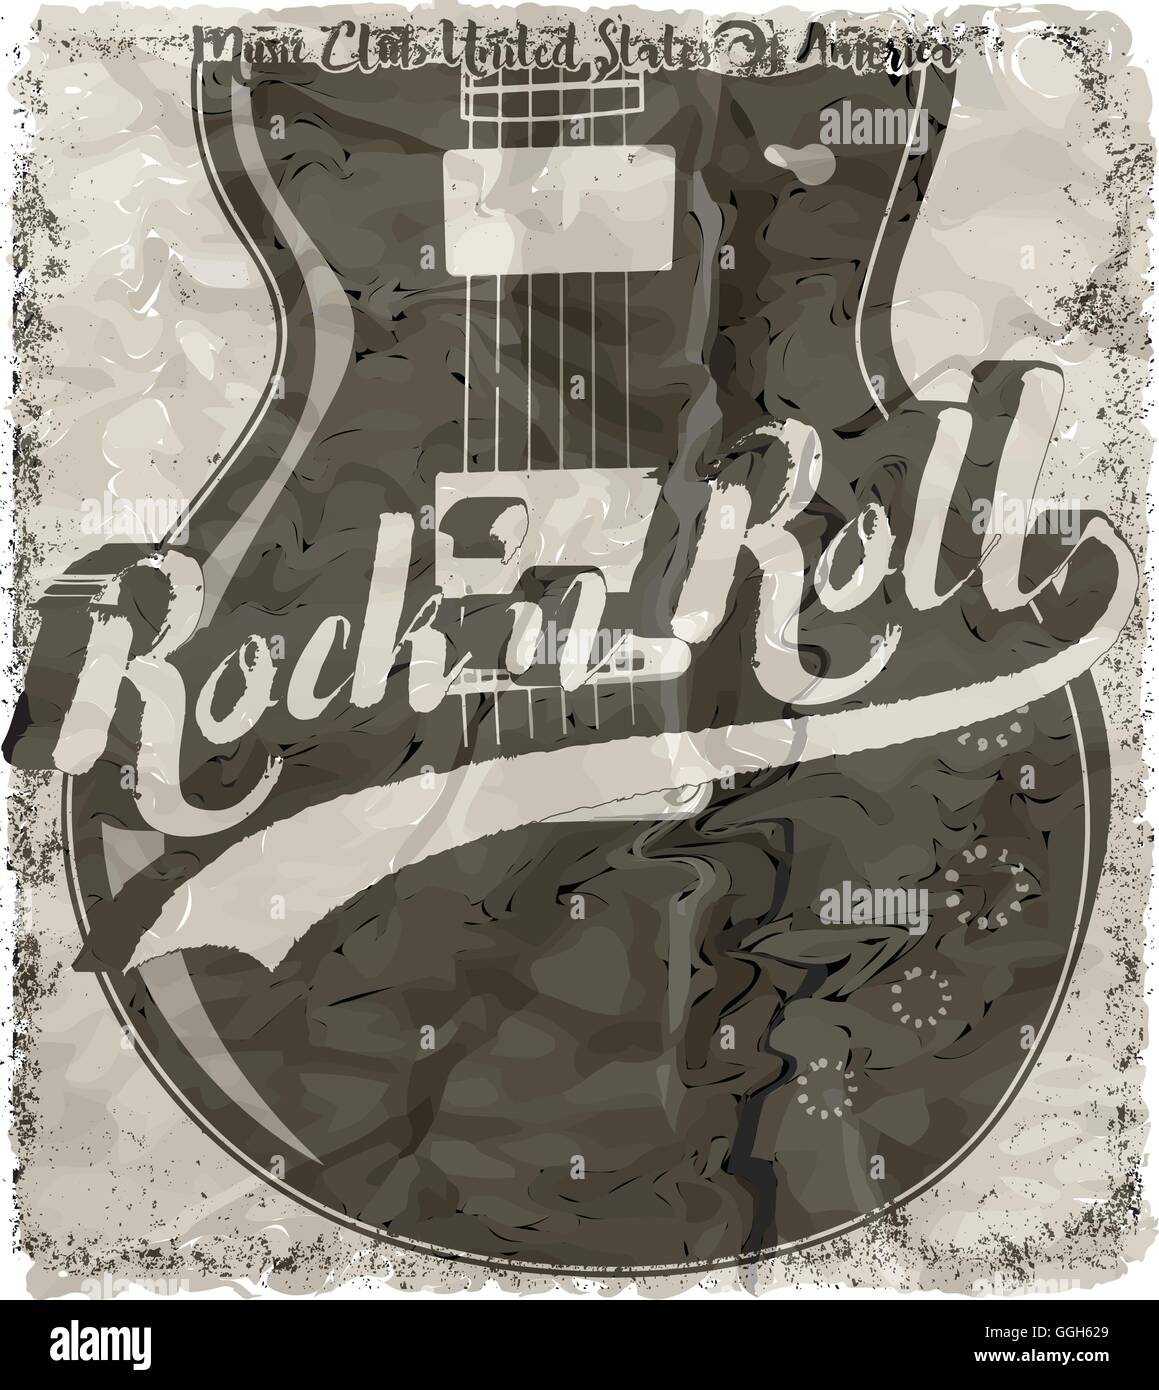 Rock'n Roll guitare affiche graphisme vectoriel en t Illustration de Vecteur